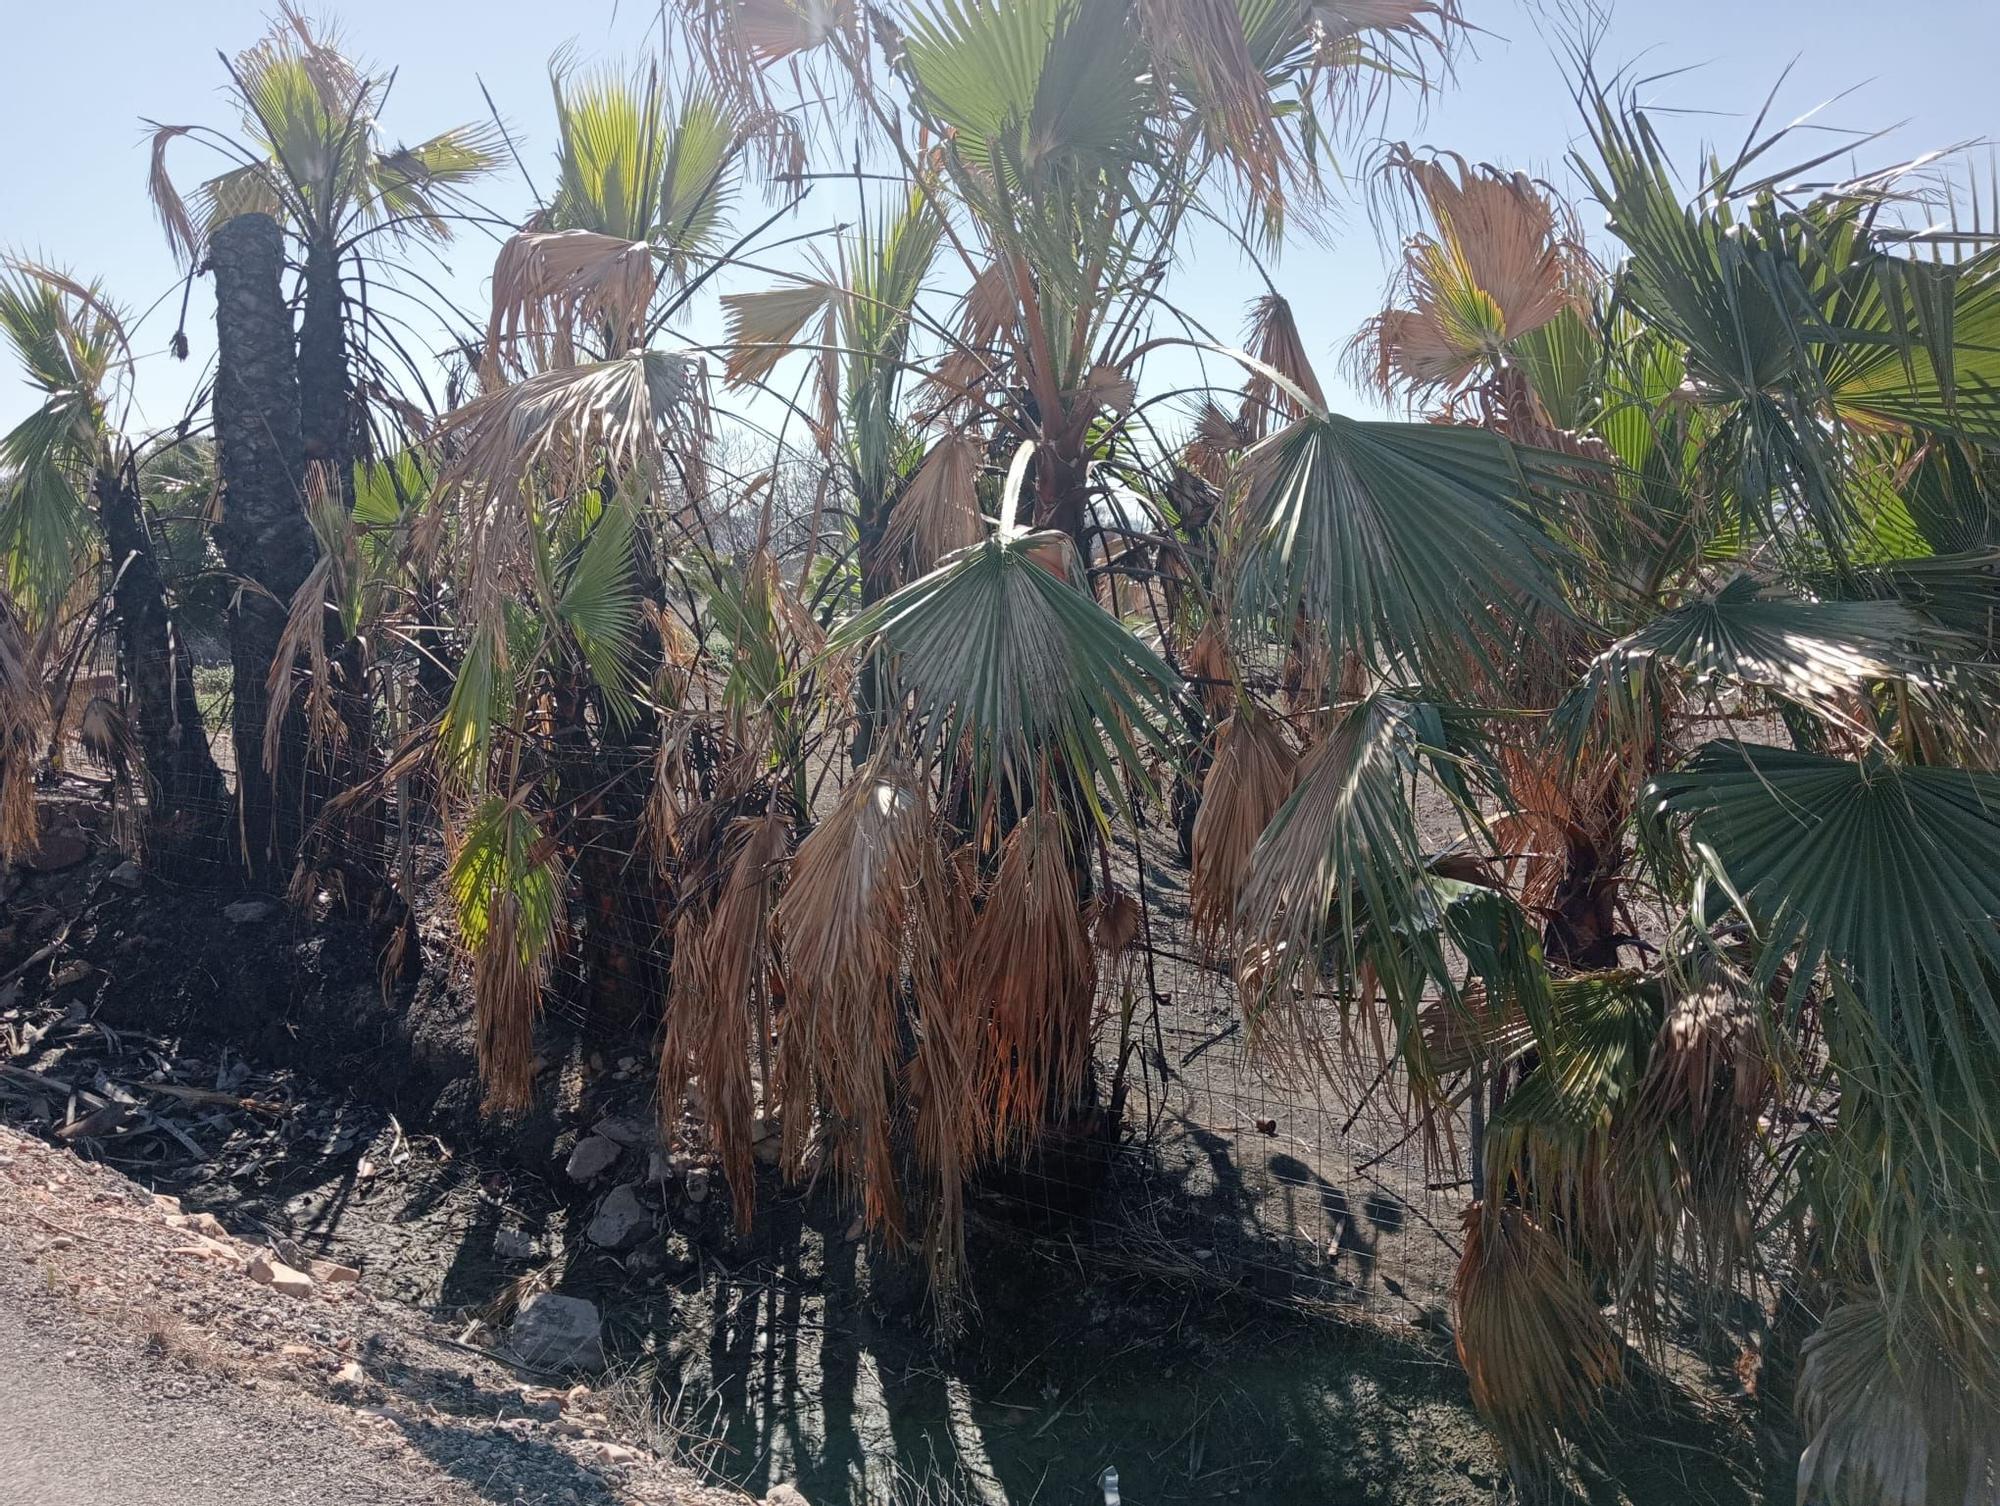 Galería: Incendio de vegetación en Onda que ha afectado a cultivo abandonado. Ya controlado.